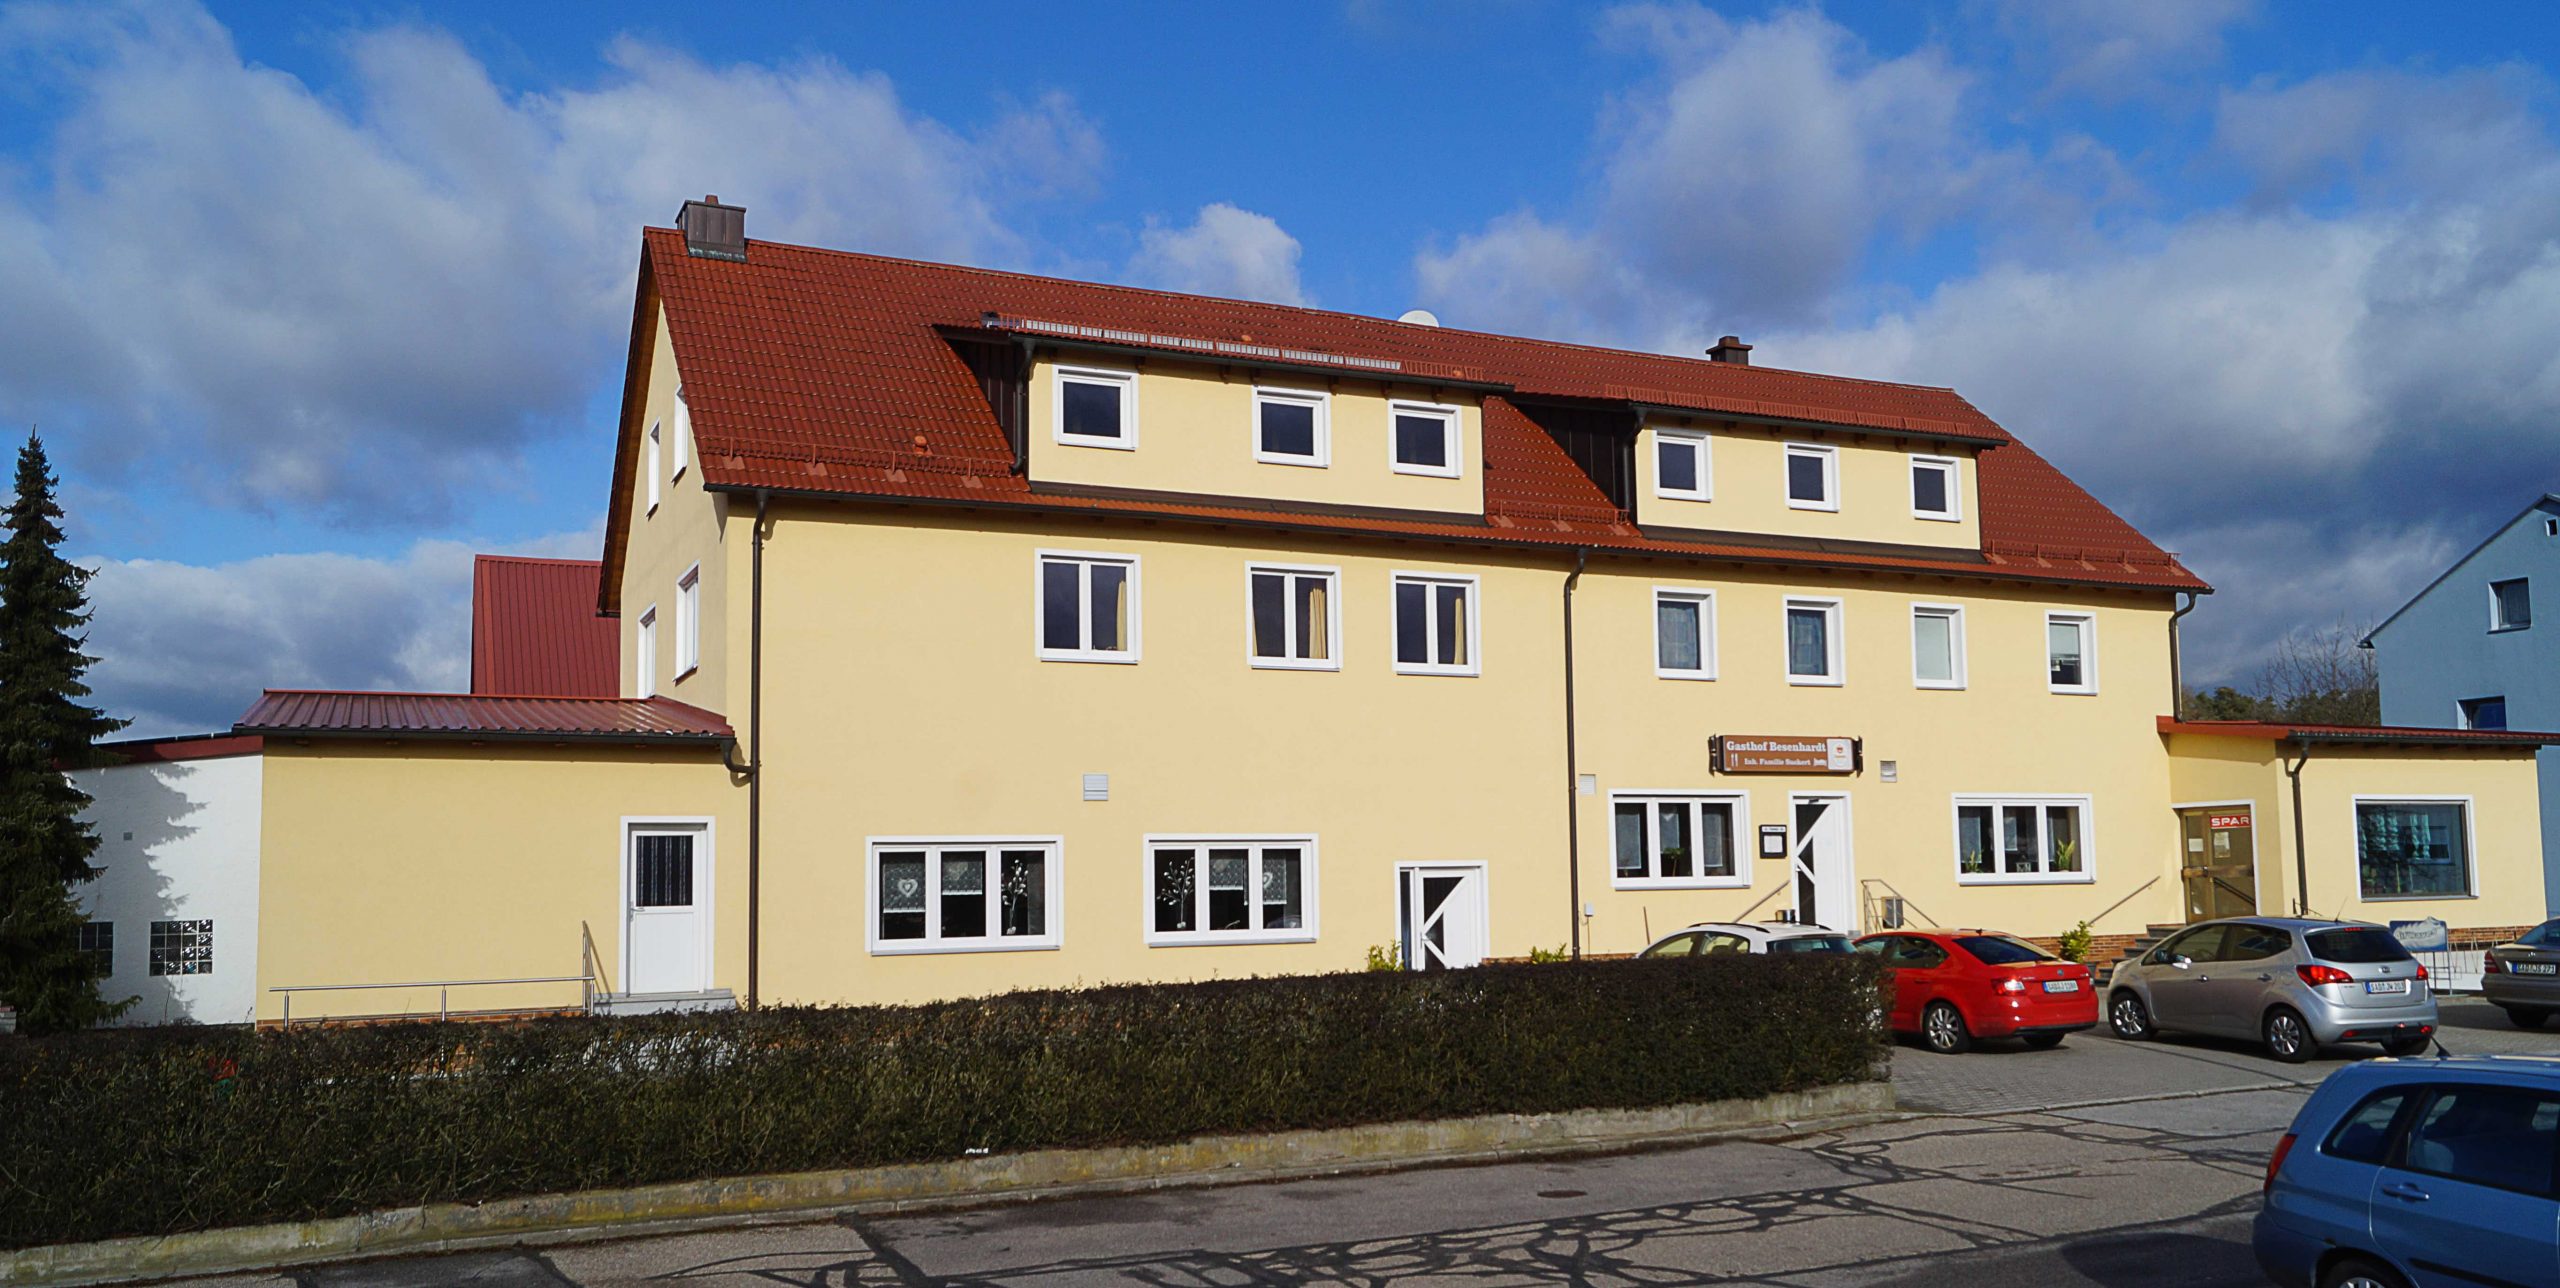 Gasthaus & Metzgerei Besenhardt
direkt an der B85 im oberpfälzer Seenland